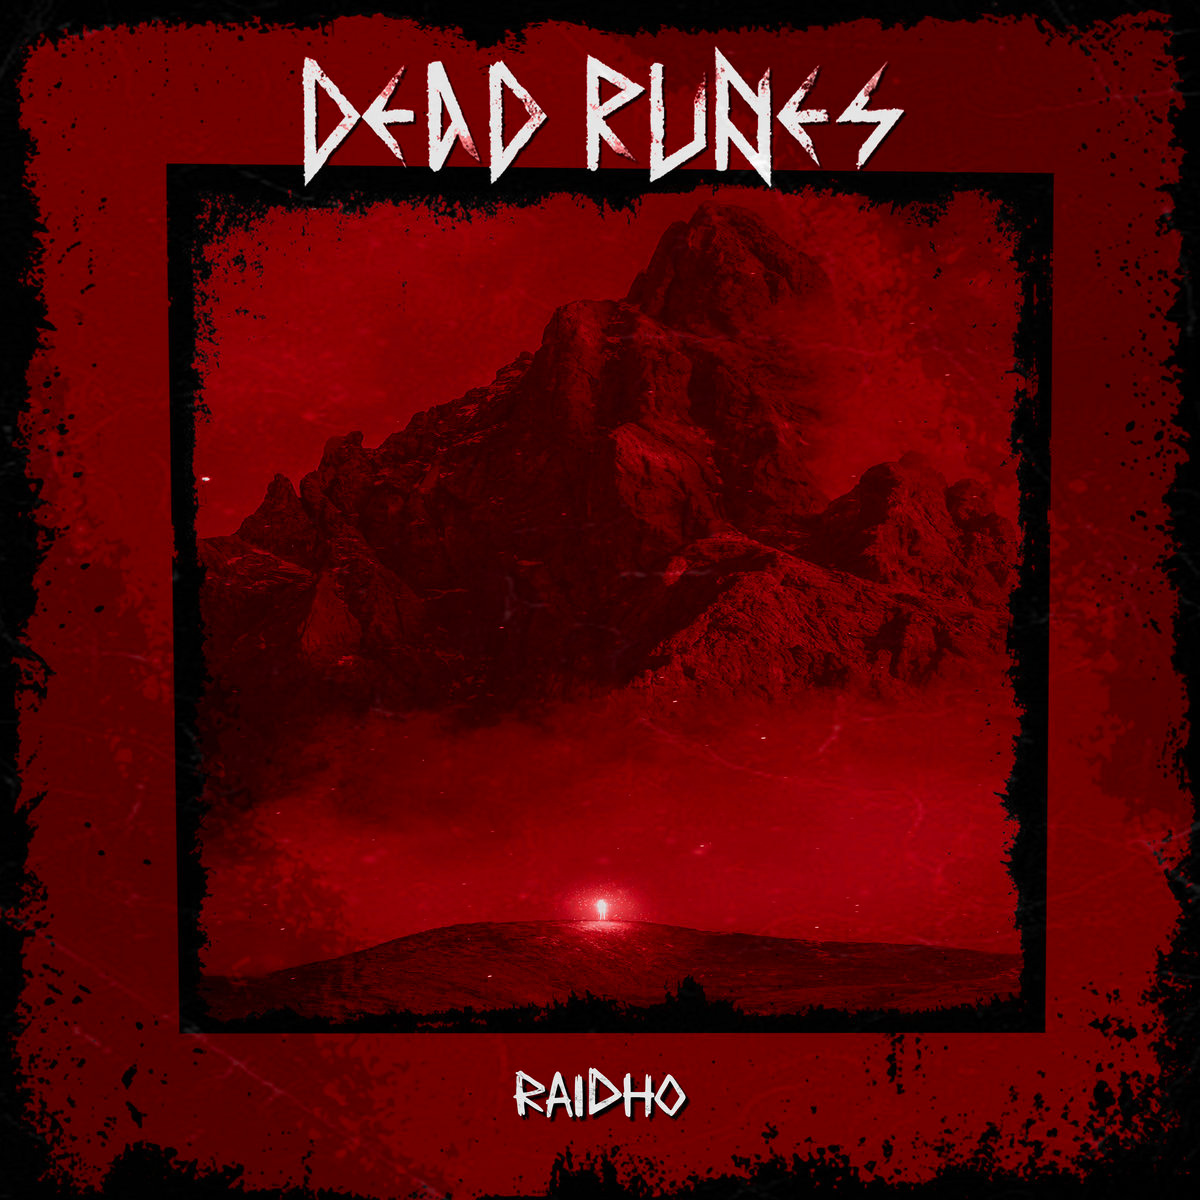 Raidho by Dead Runes